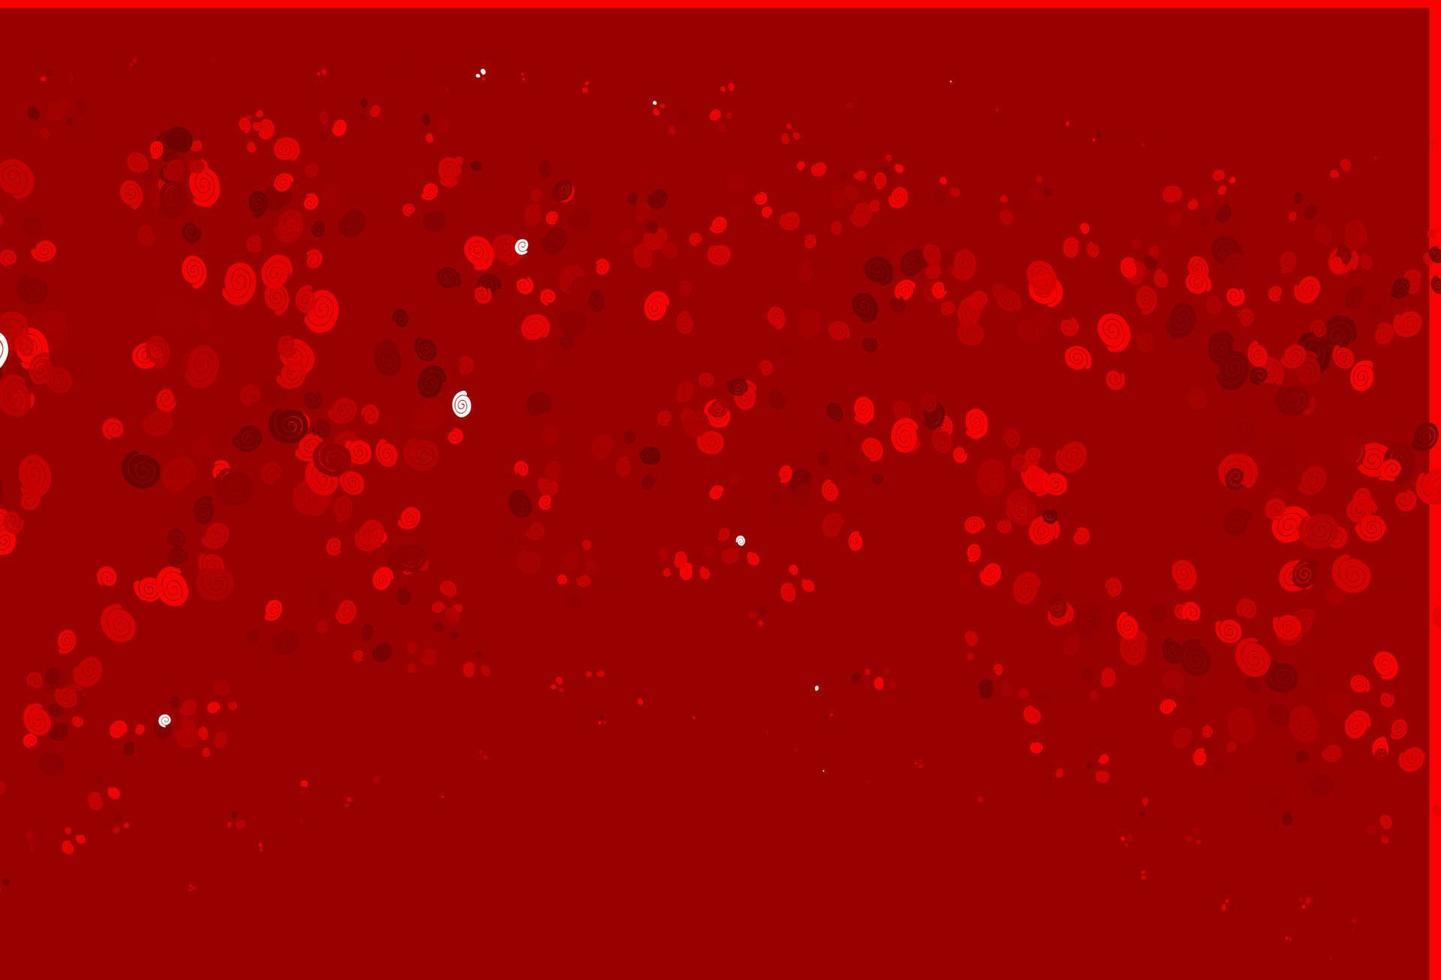 modelo de vetor vermelho claro com formas líquidas.